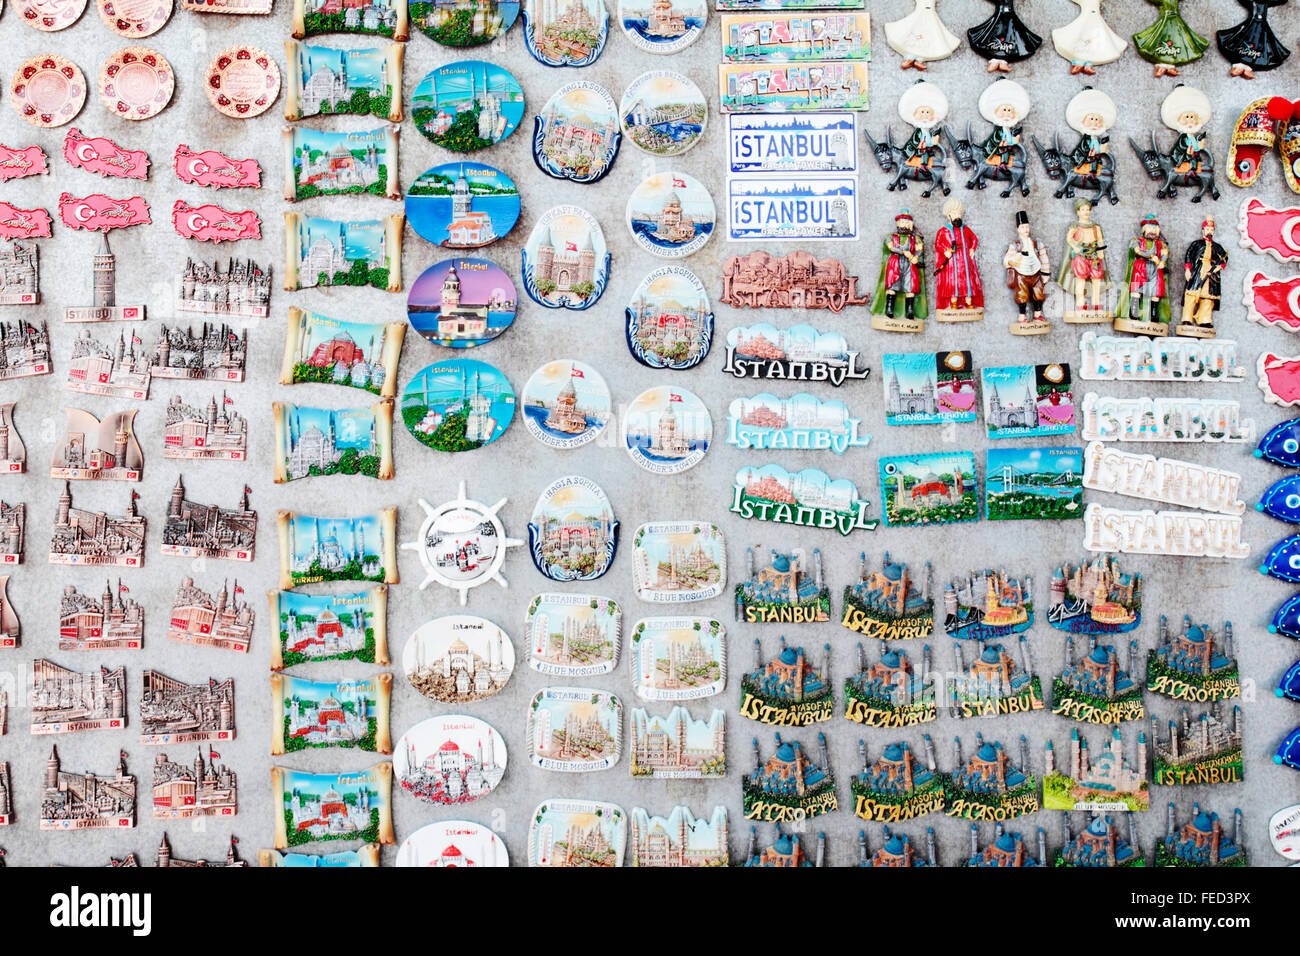 Fridge Magnets of Istanbul and Turkey, Istanbul, Turkey Stock Photo